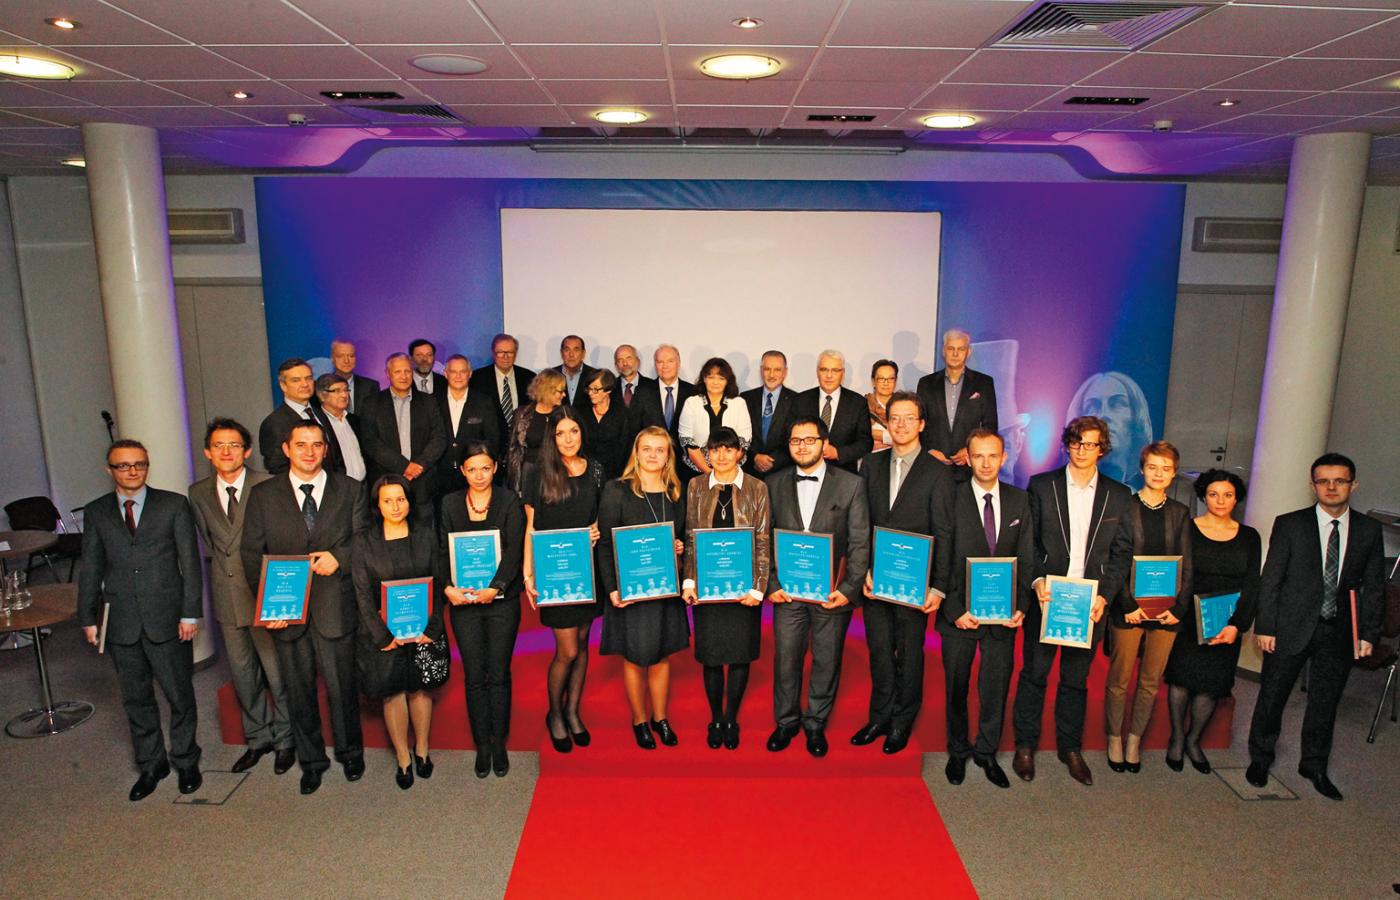 Dziesięciu finalistów-laureatów i pięciu zdobywców głównego trofeum Nagród Naukowych Polityki 2013 na wspólnym zdjęciu z członkami jury  w redakcji.